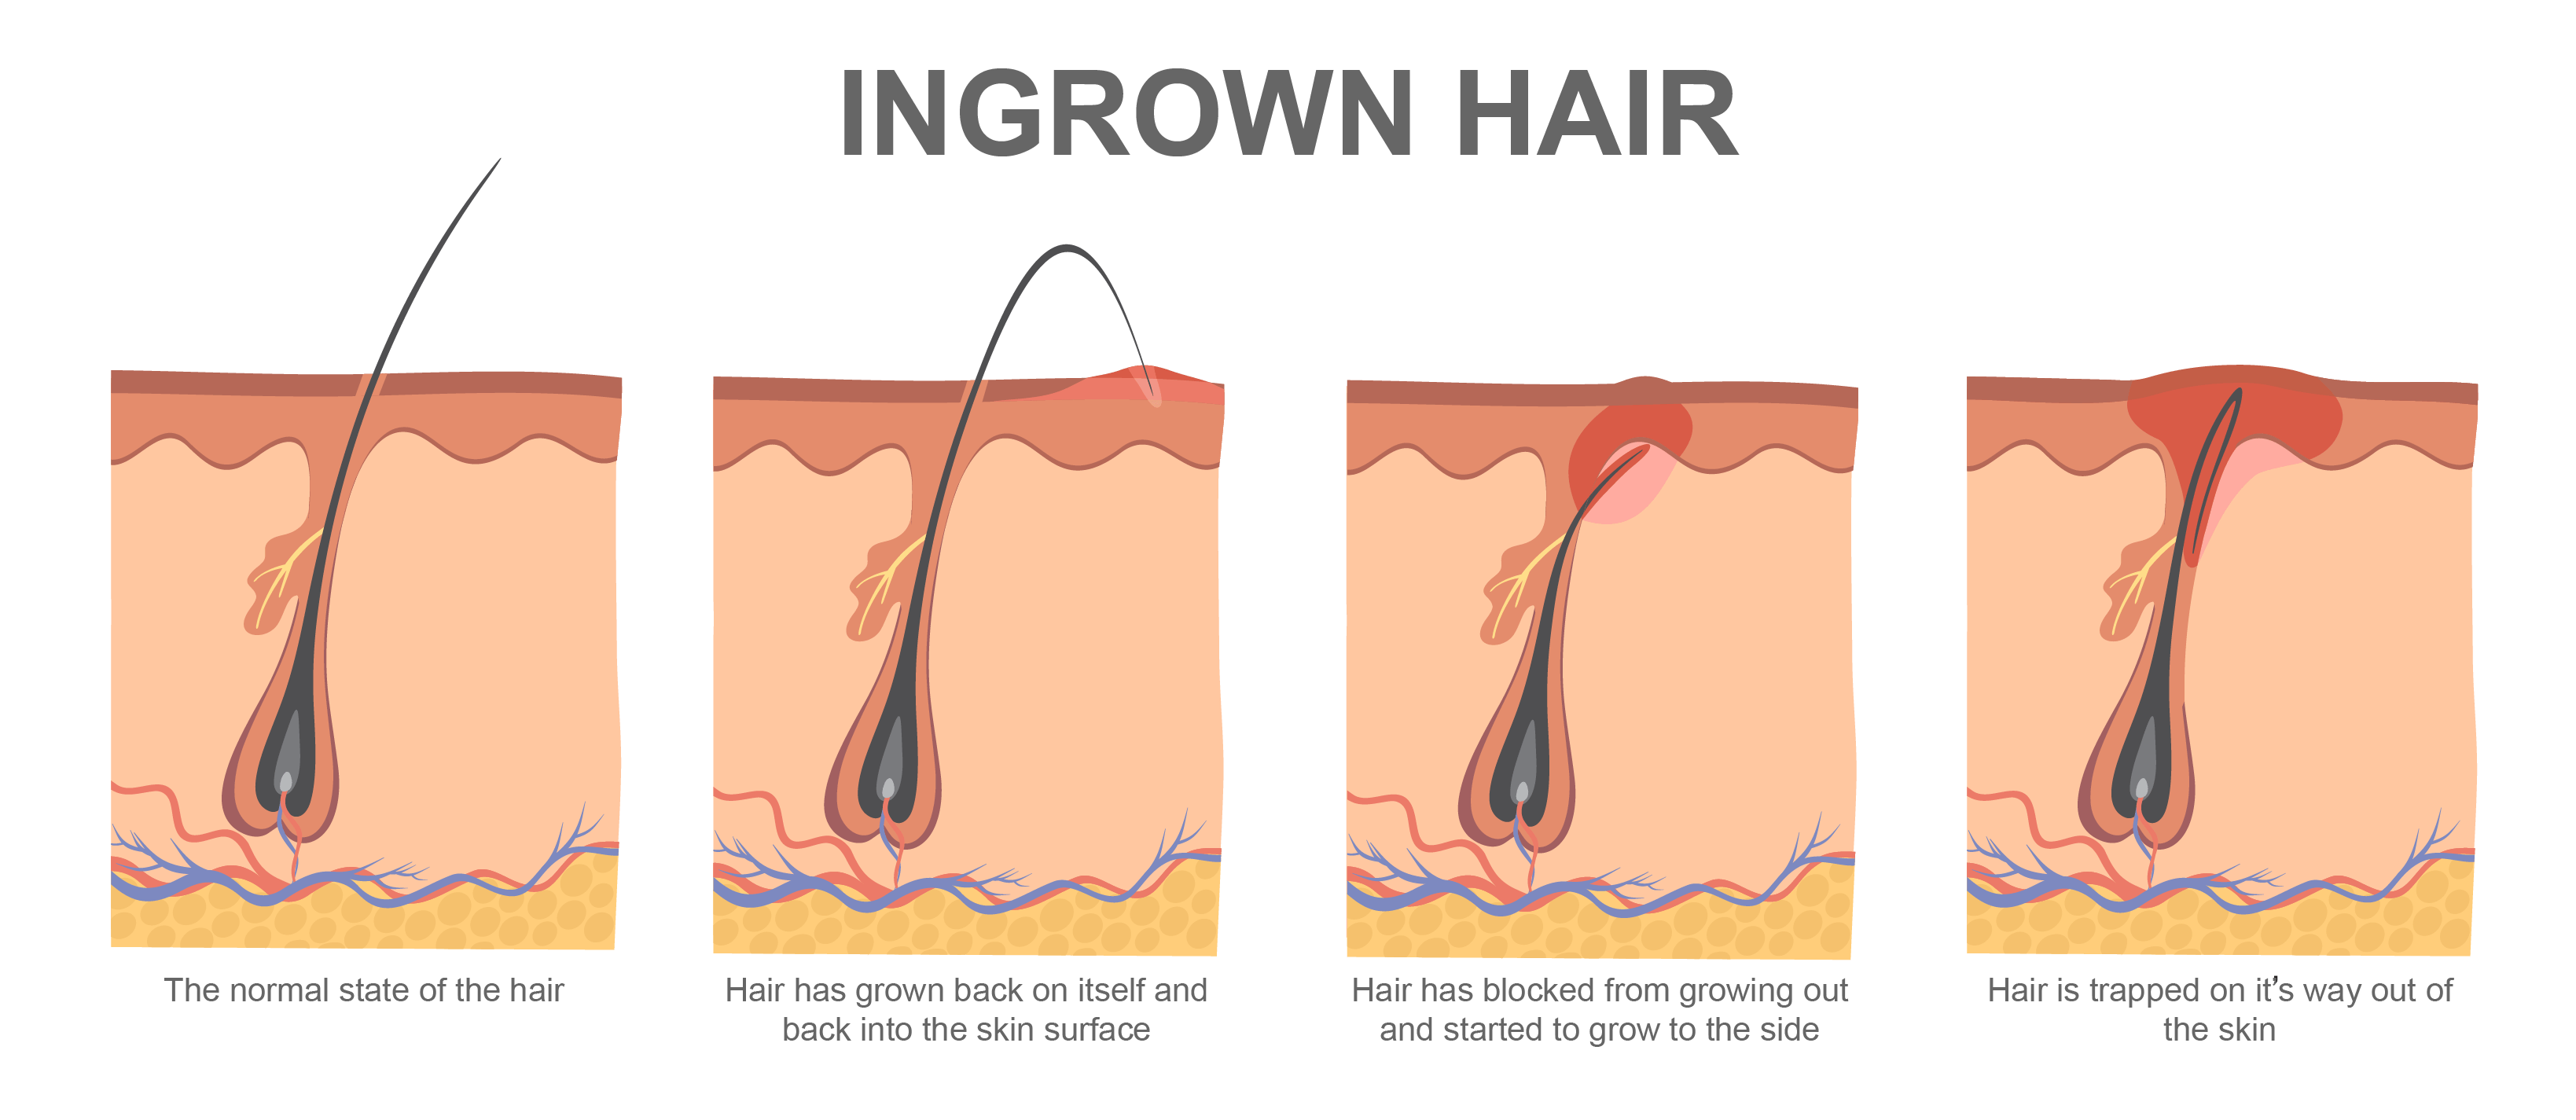 How to Get Rid of Ingrown Hairs